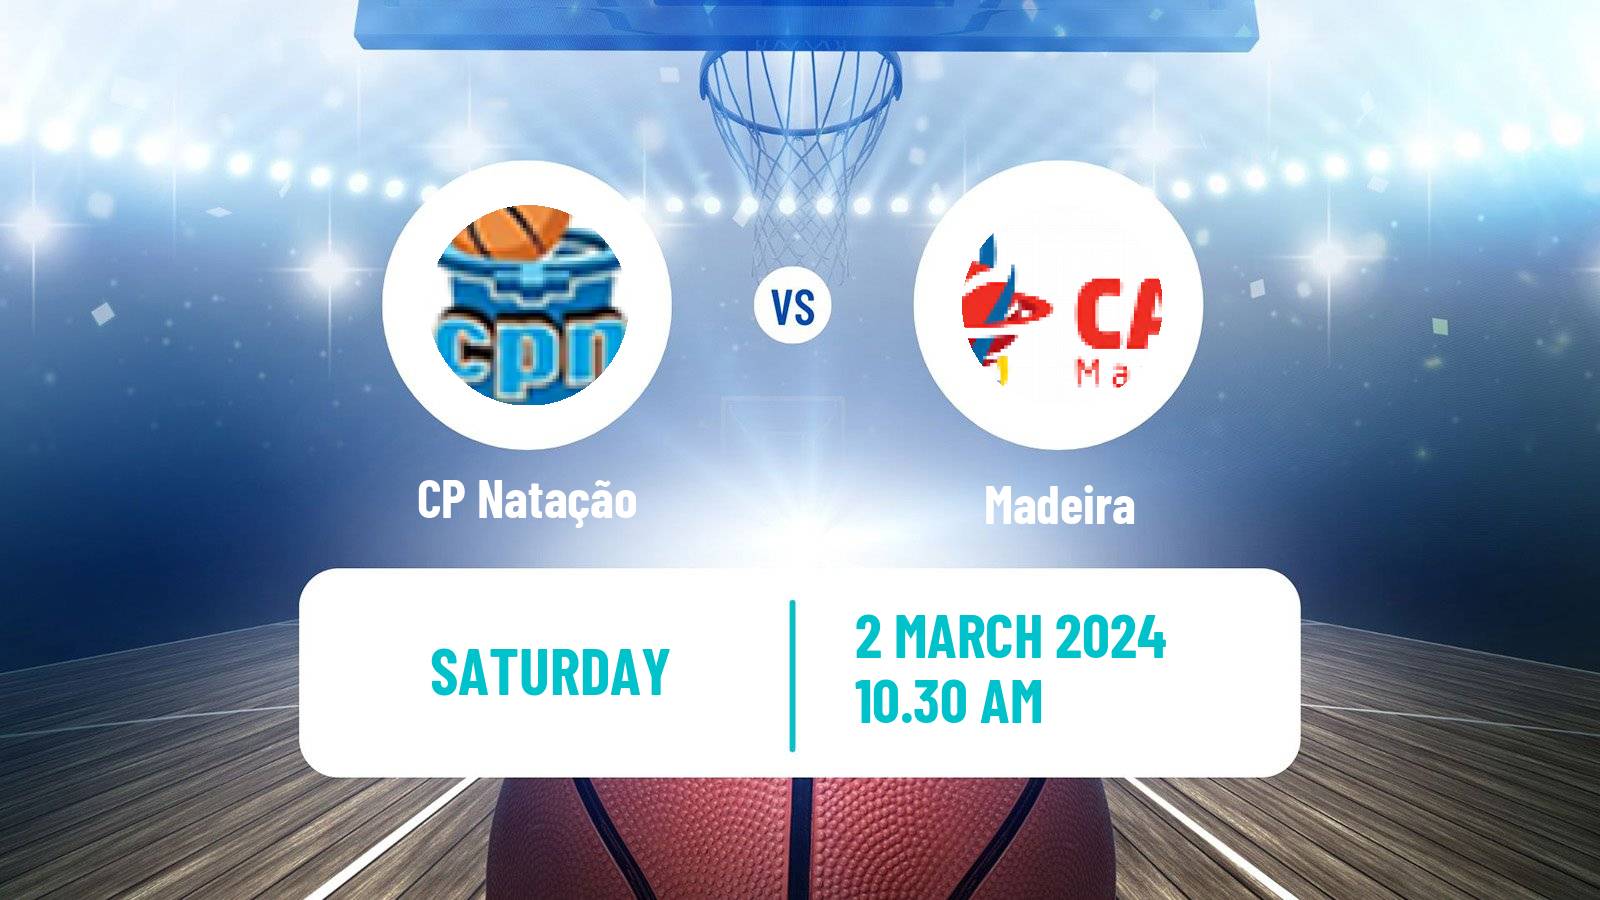 Basketball Portuguese LFB Natação - Madeira